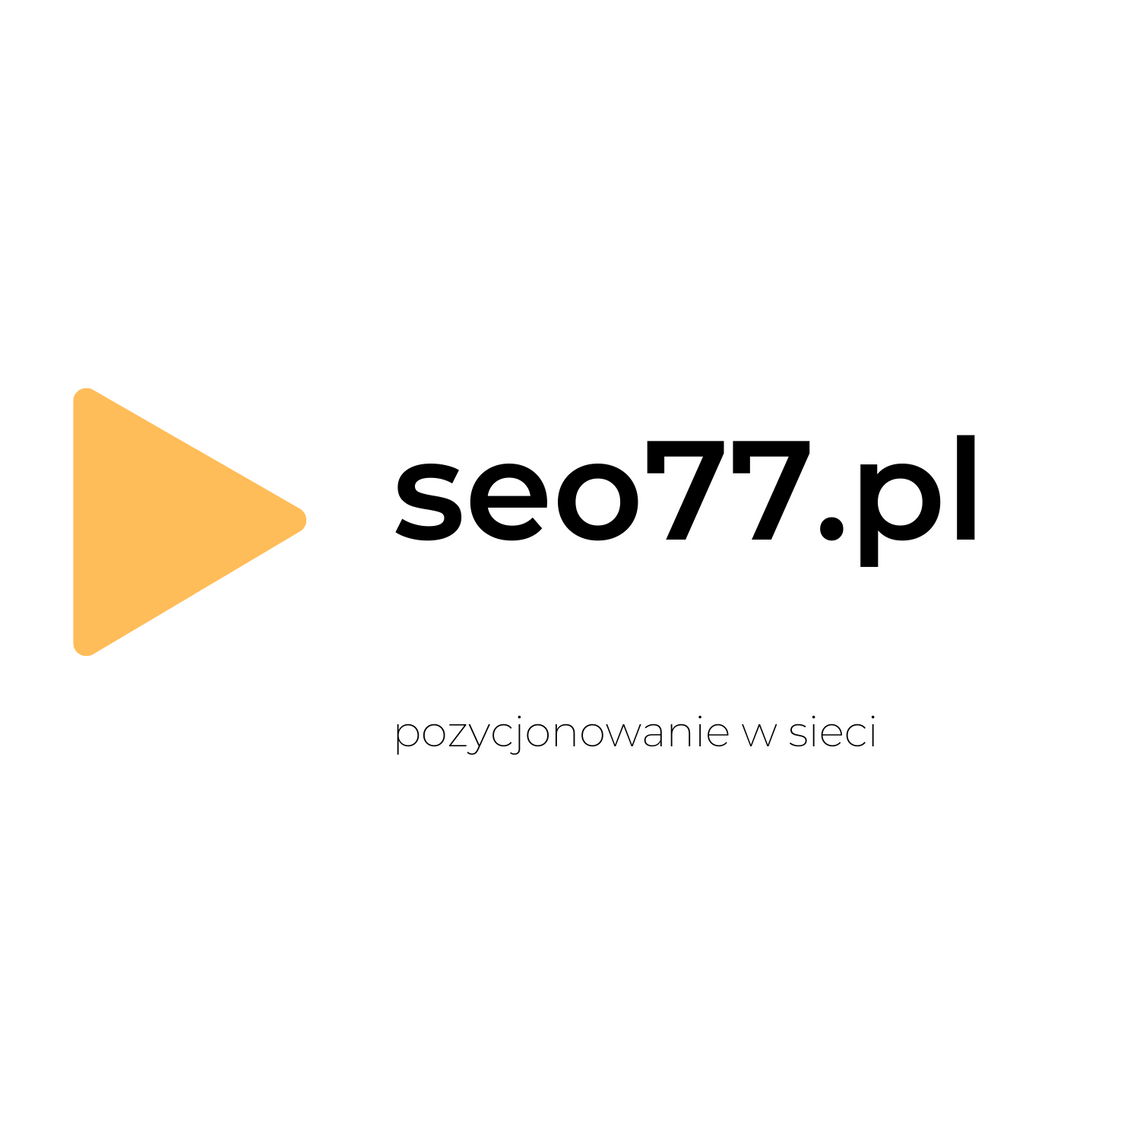 SEO77 - pozycjonowanie stron internetowych